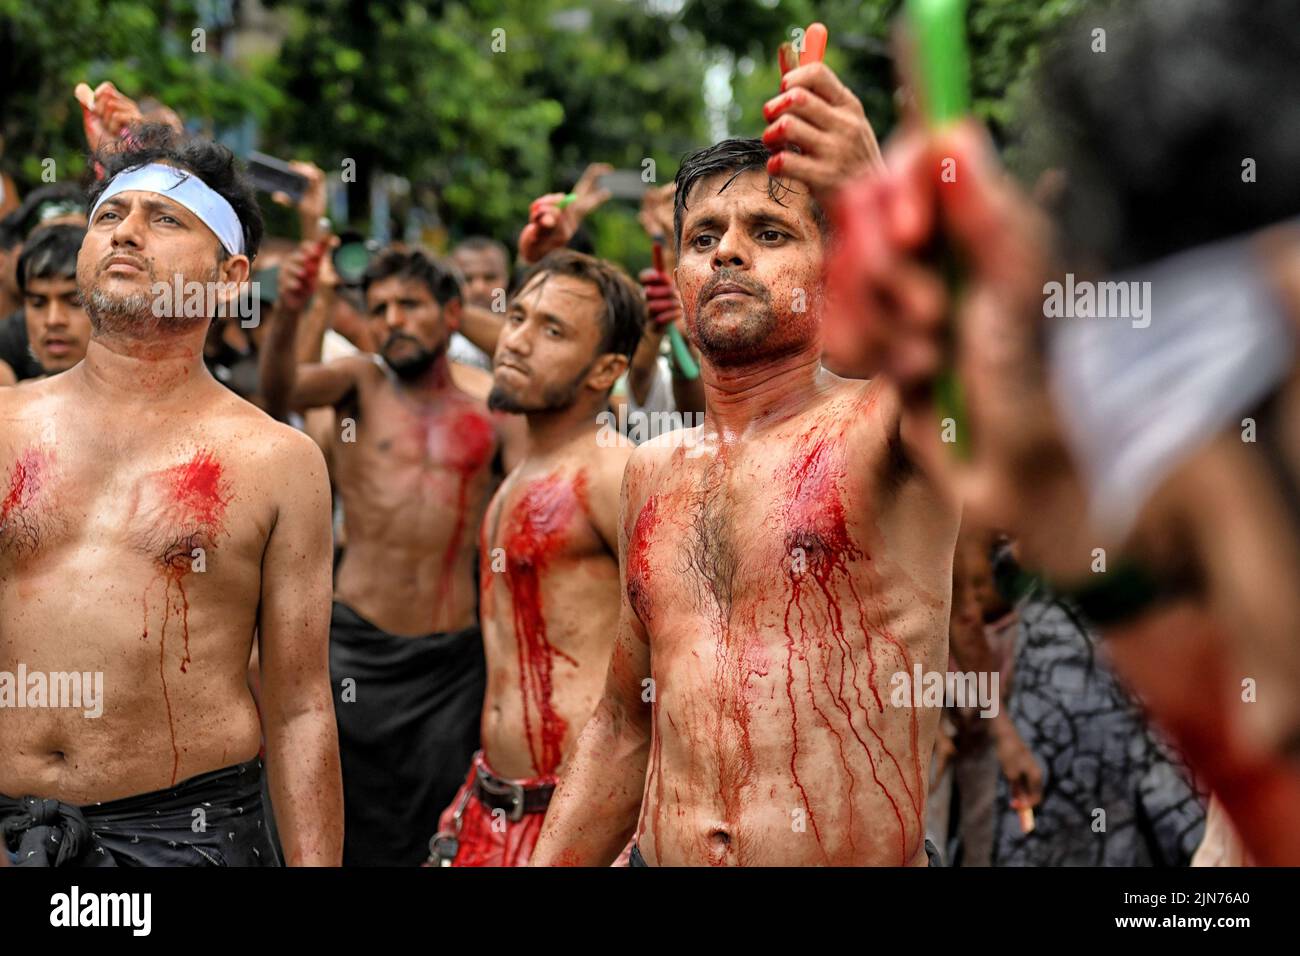 (NOTA DEL EDITOR: La imagen contiene contenido gráfico.) Los musulmanes chiítas cubiertos de sangre golpearon sus pechos y cabezas con hojas durante la procesión de Muharram en Kolkata. Muharram es el primer mes del calendario islámico y Ashura es el décimo día del mes de Muharram en el que se celebra la conmemoración del martirio del imán Hussain, nieto del profeta Mahoma (PBUH), durante la batalla de Karbala. Es parte del duelo por los musulmanes chiítas y un día de ayuno para los musulmanes sunitas que se observa en todo el mundo. Foto de stock